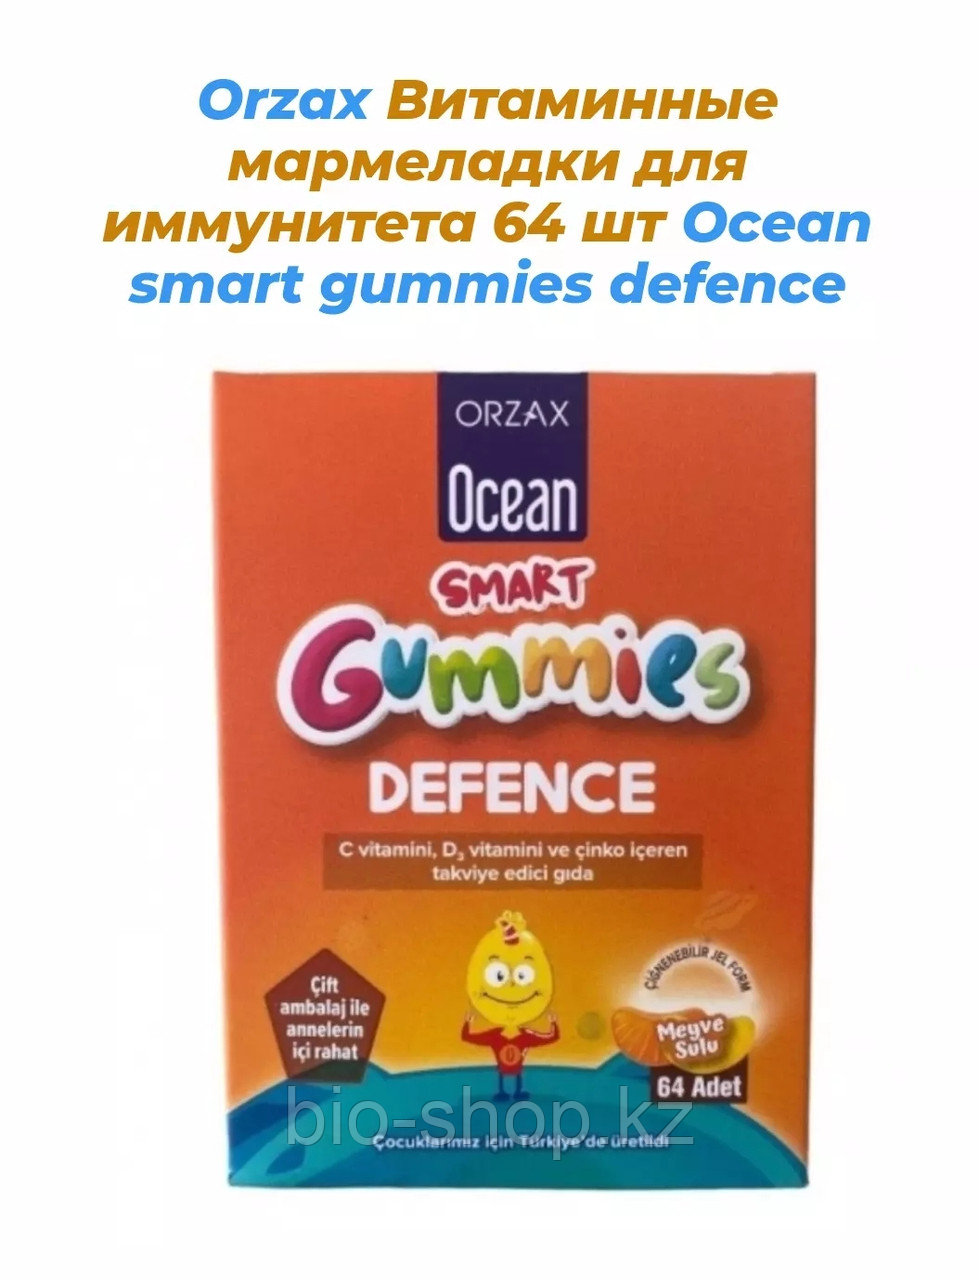 Orzax Витаминные мармеладки для иммунитета 64 шт Ocean smart gummies defence